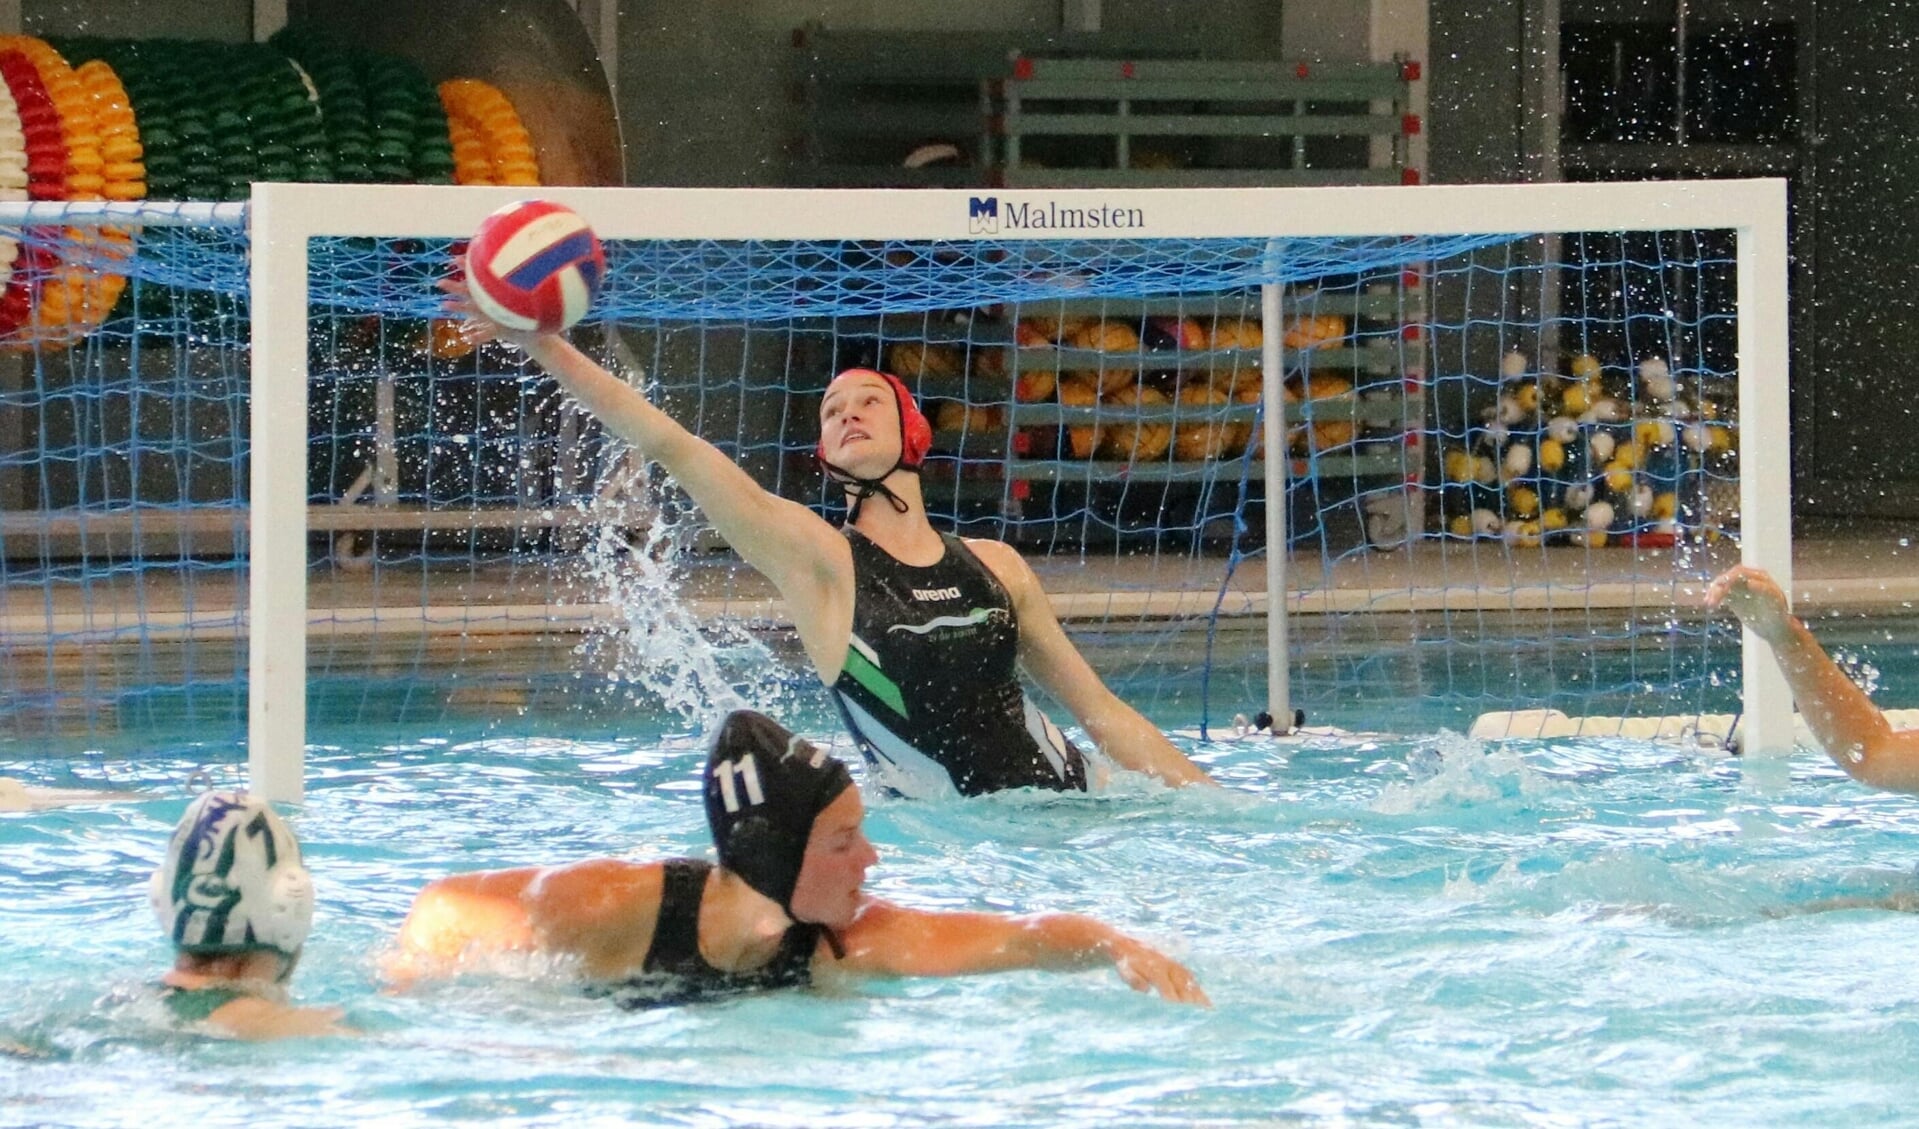 In de kwartfinale moesten de Nederlandse waterpolodames een onverwachte 12-13 nederlaag slikken tegen Hongarije. 